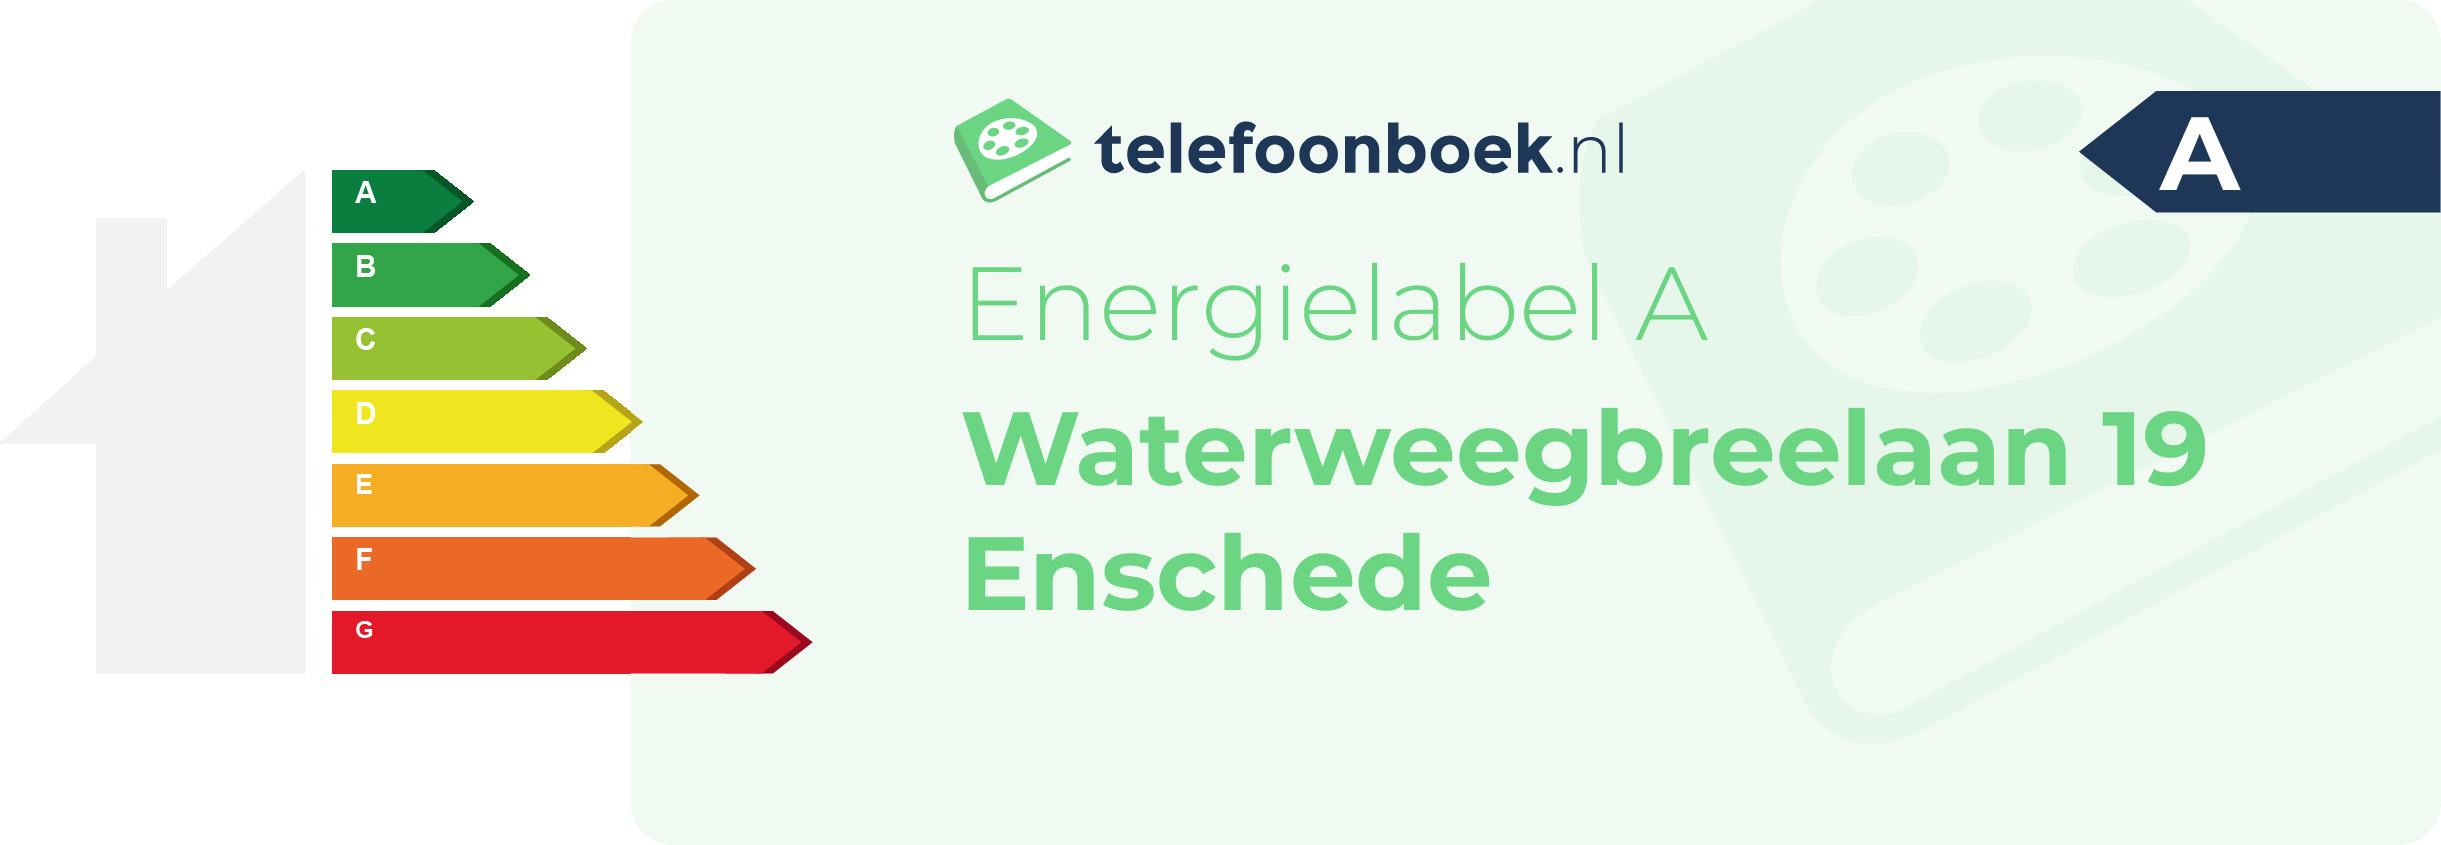 Energielabel Waterweegbreelaan 19 Enschede